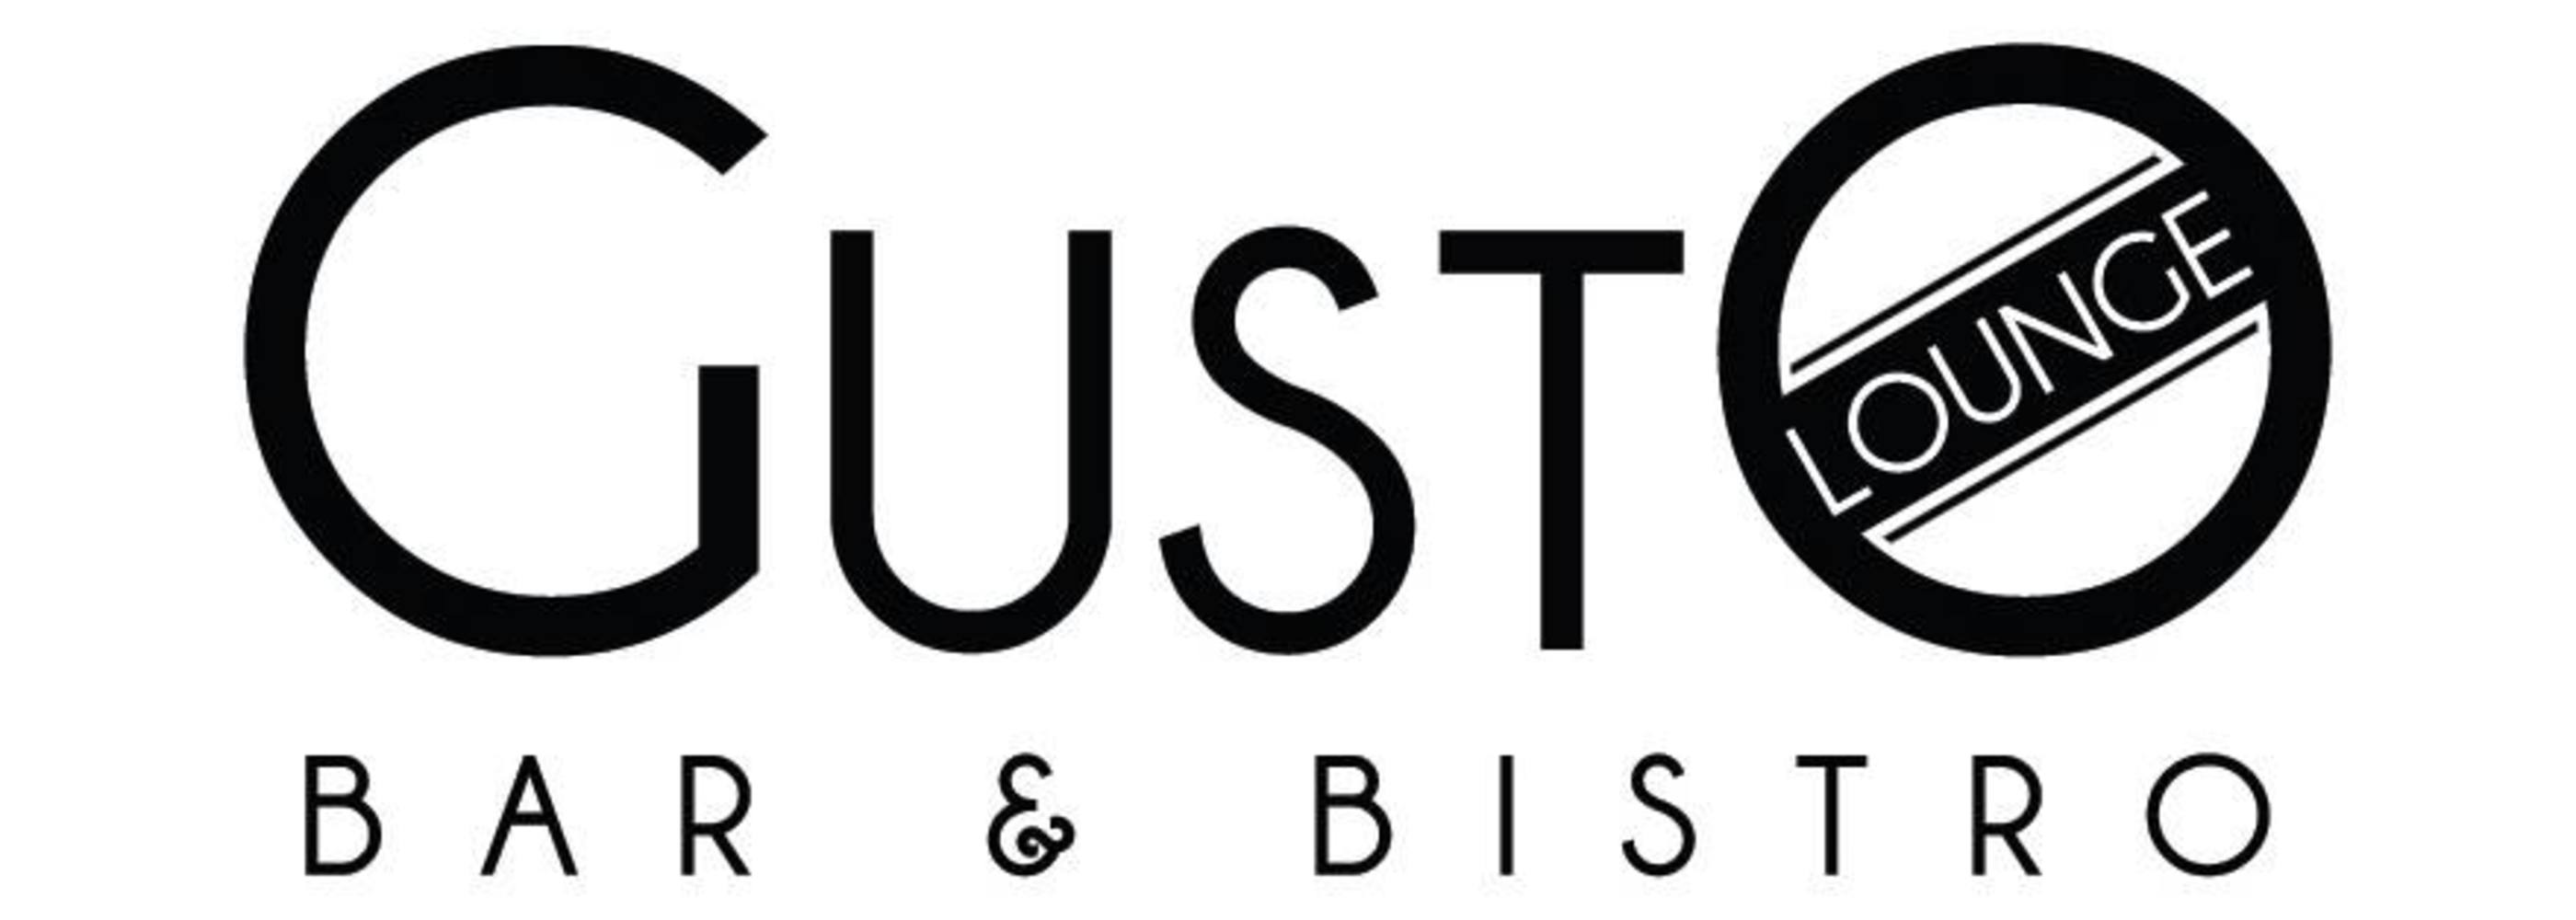 Gusto Logo - Widgety